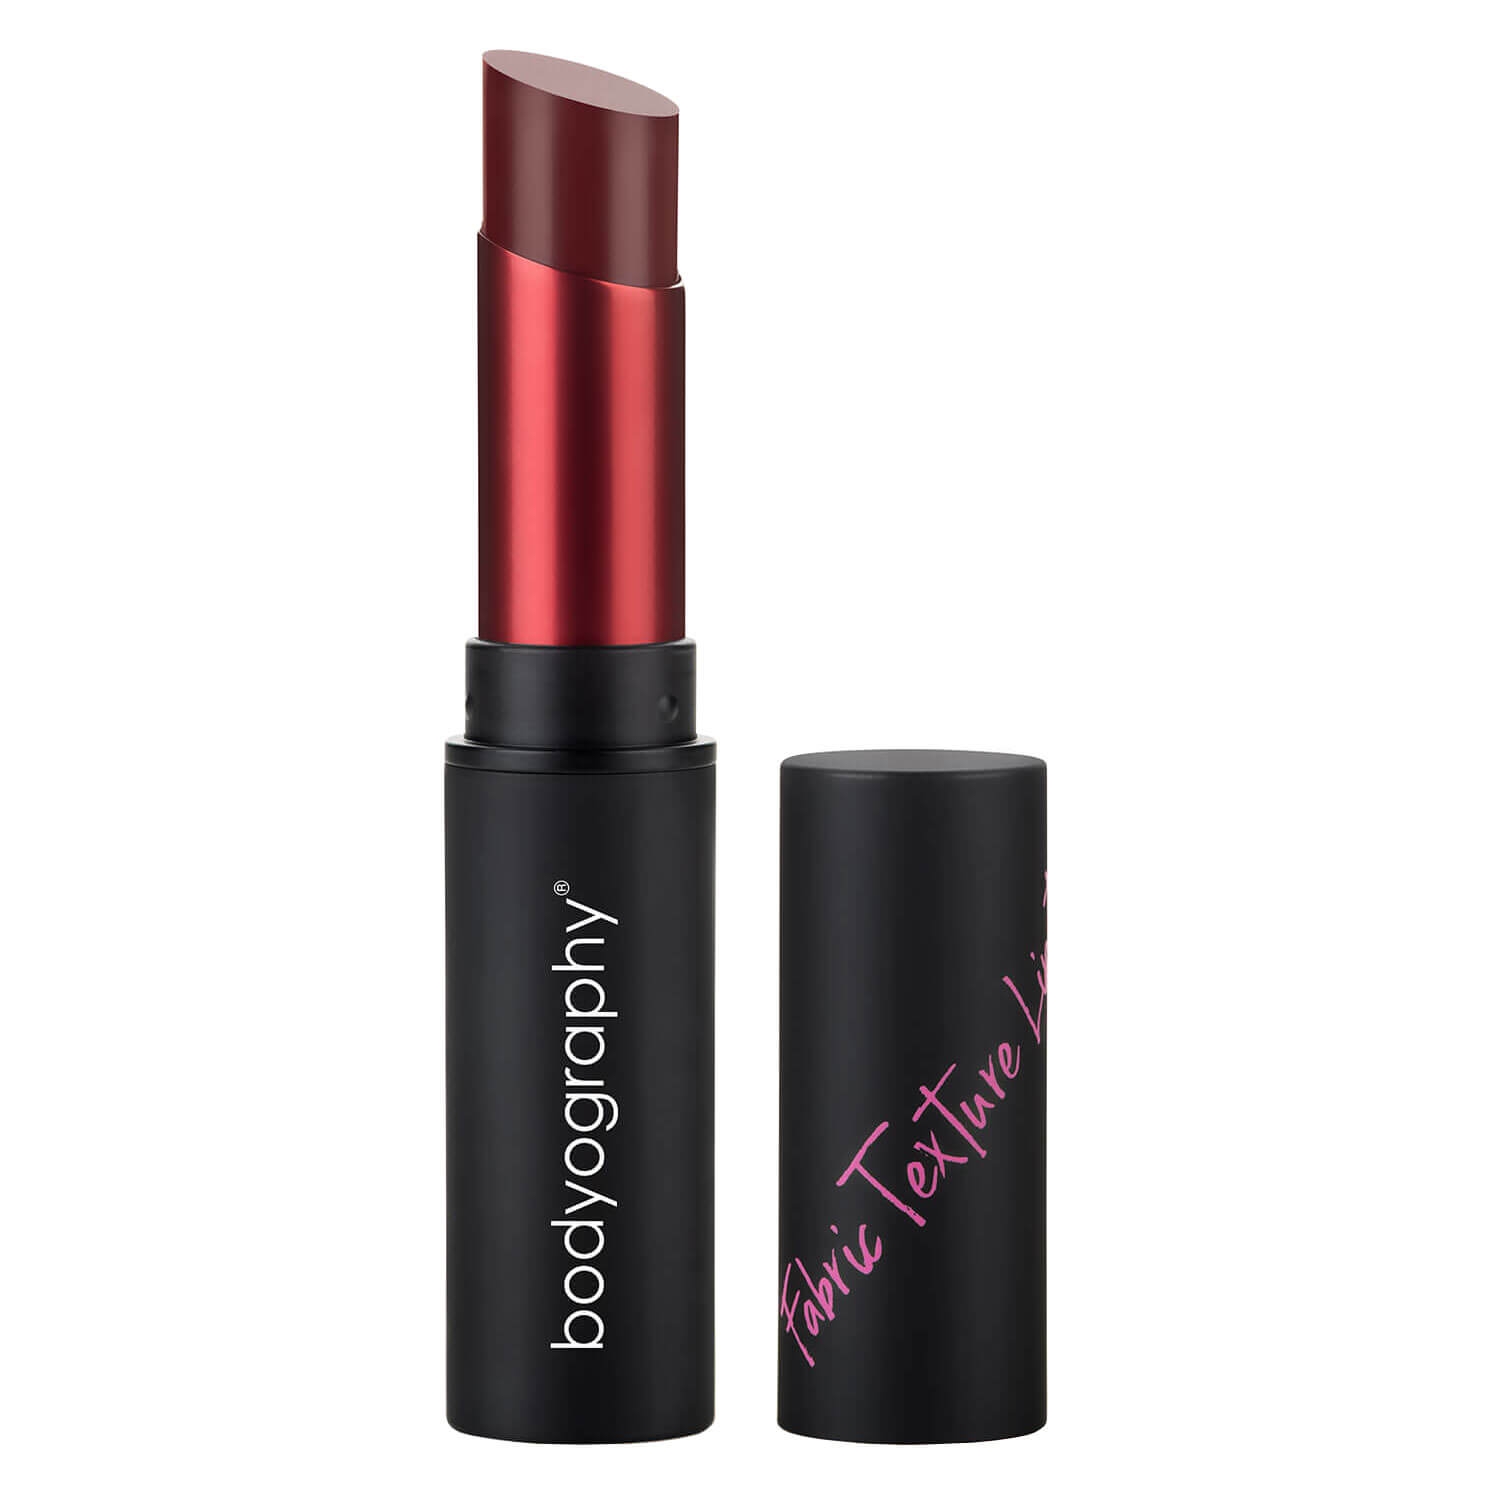 Produktbild von bodyography Lips - Fabric Texture Lipstick Velvet